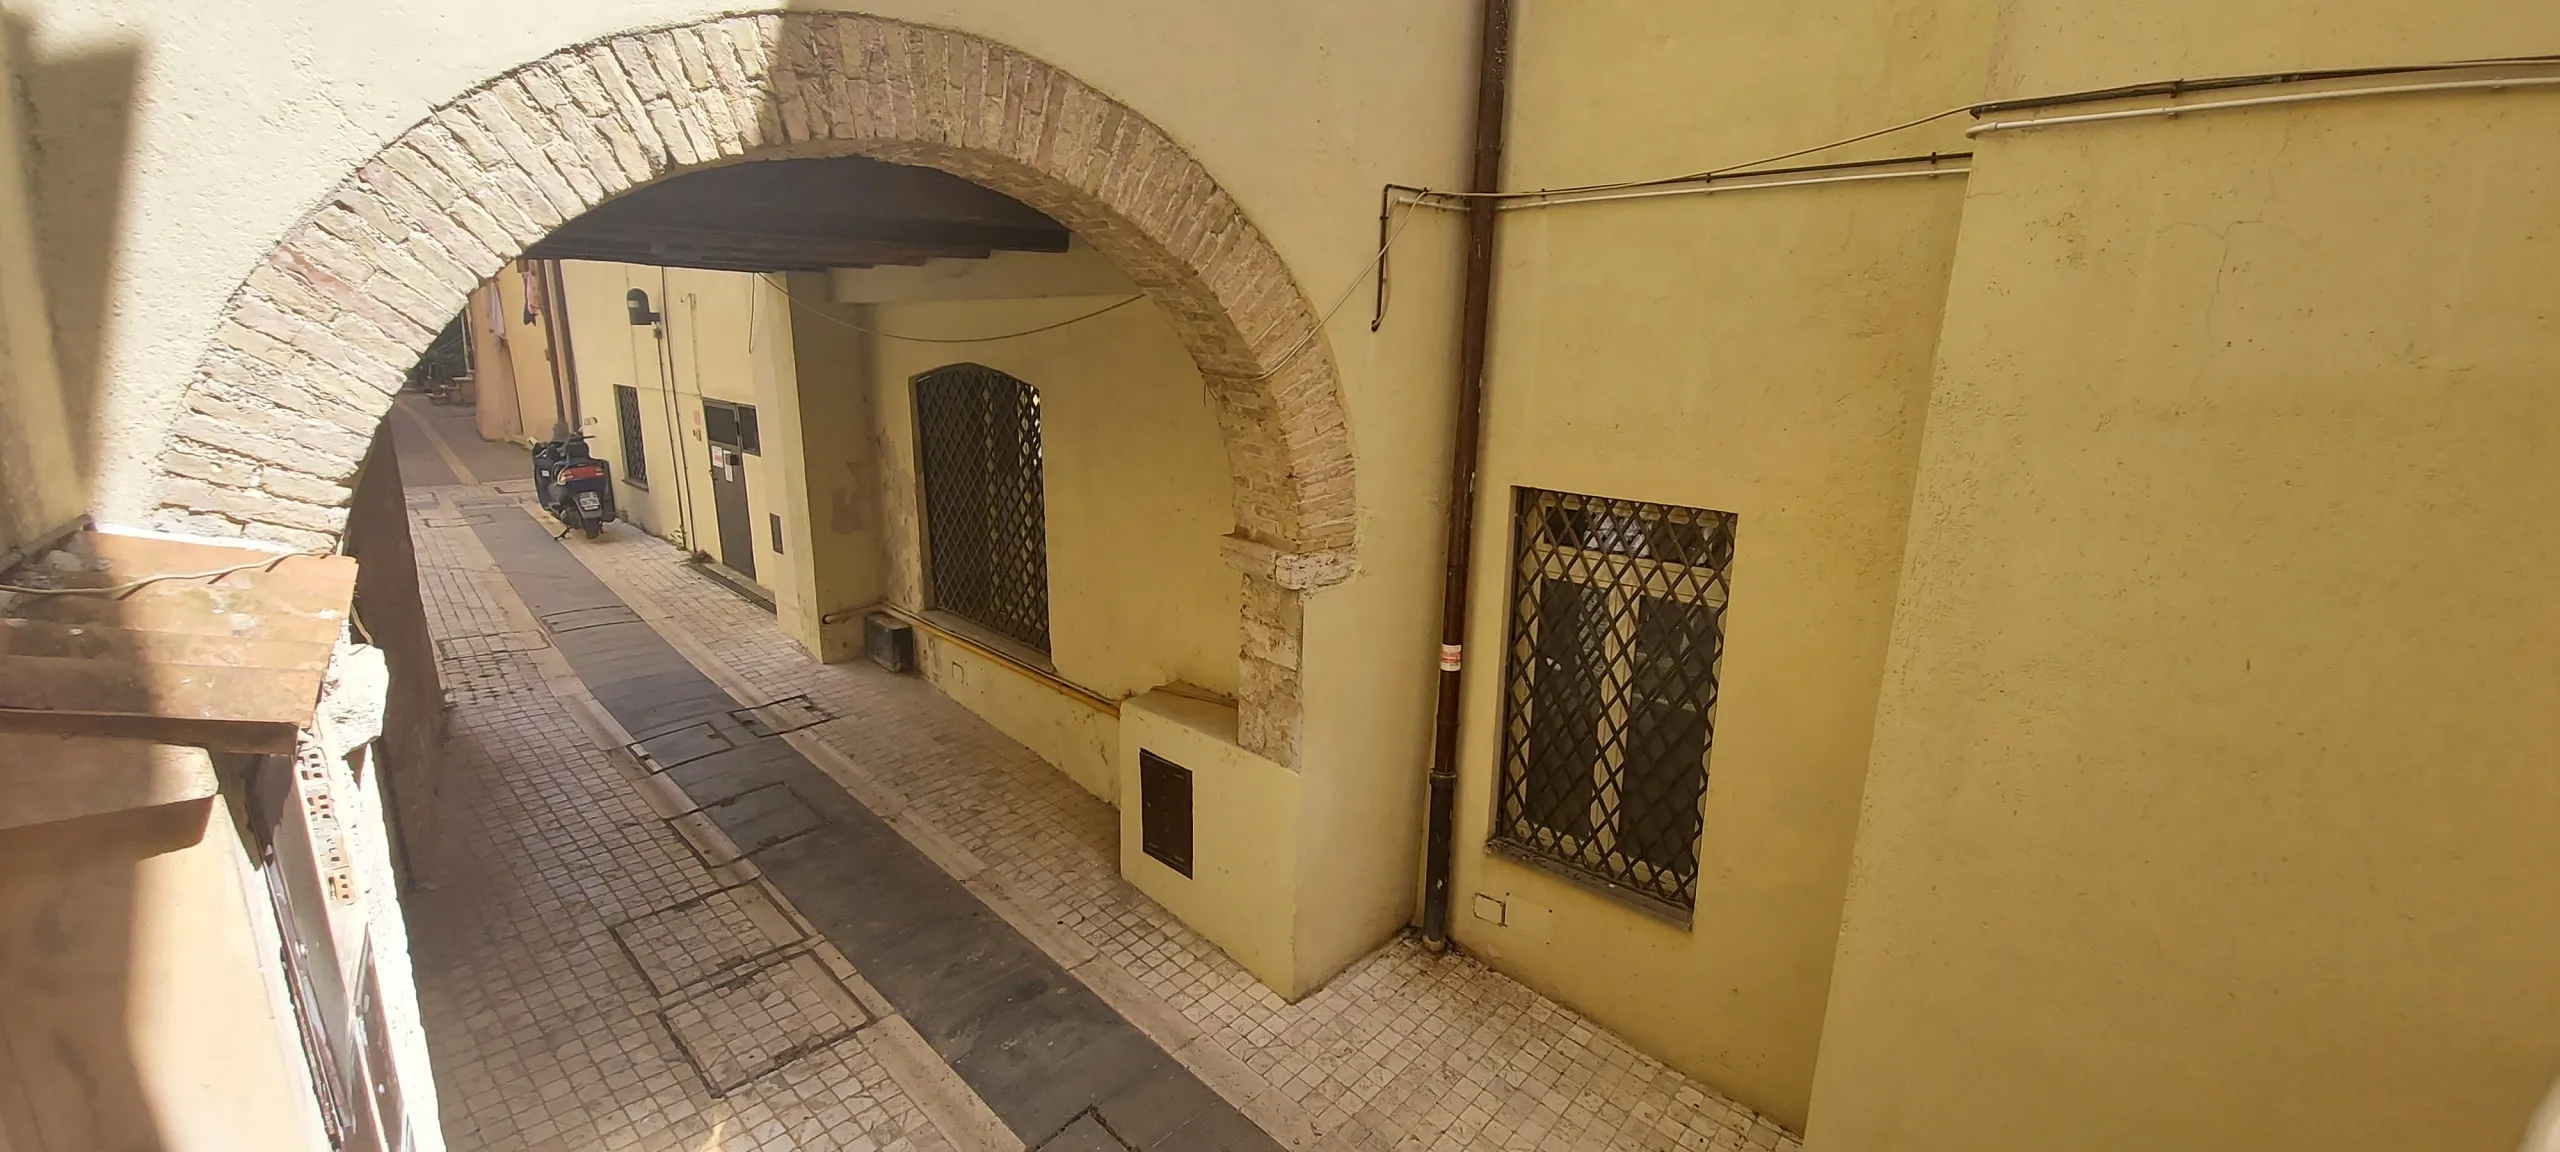 Immagine per Appartamento in vendita a Massa Martana piazza Giordano Bruno 5